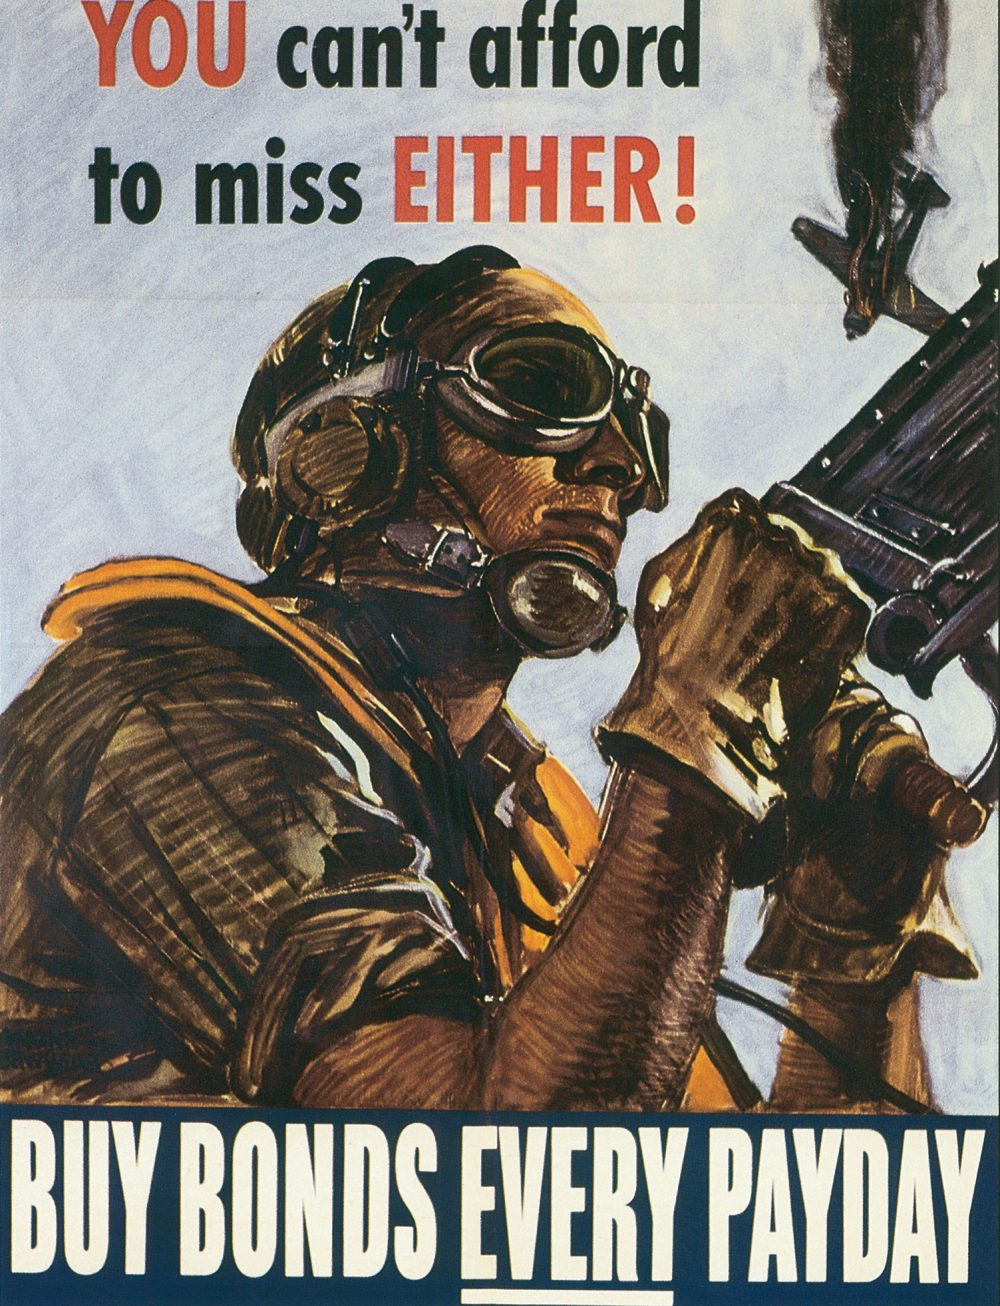 US War Bond poster, 1944